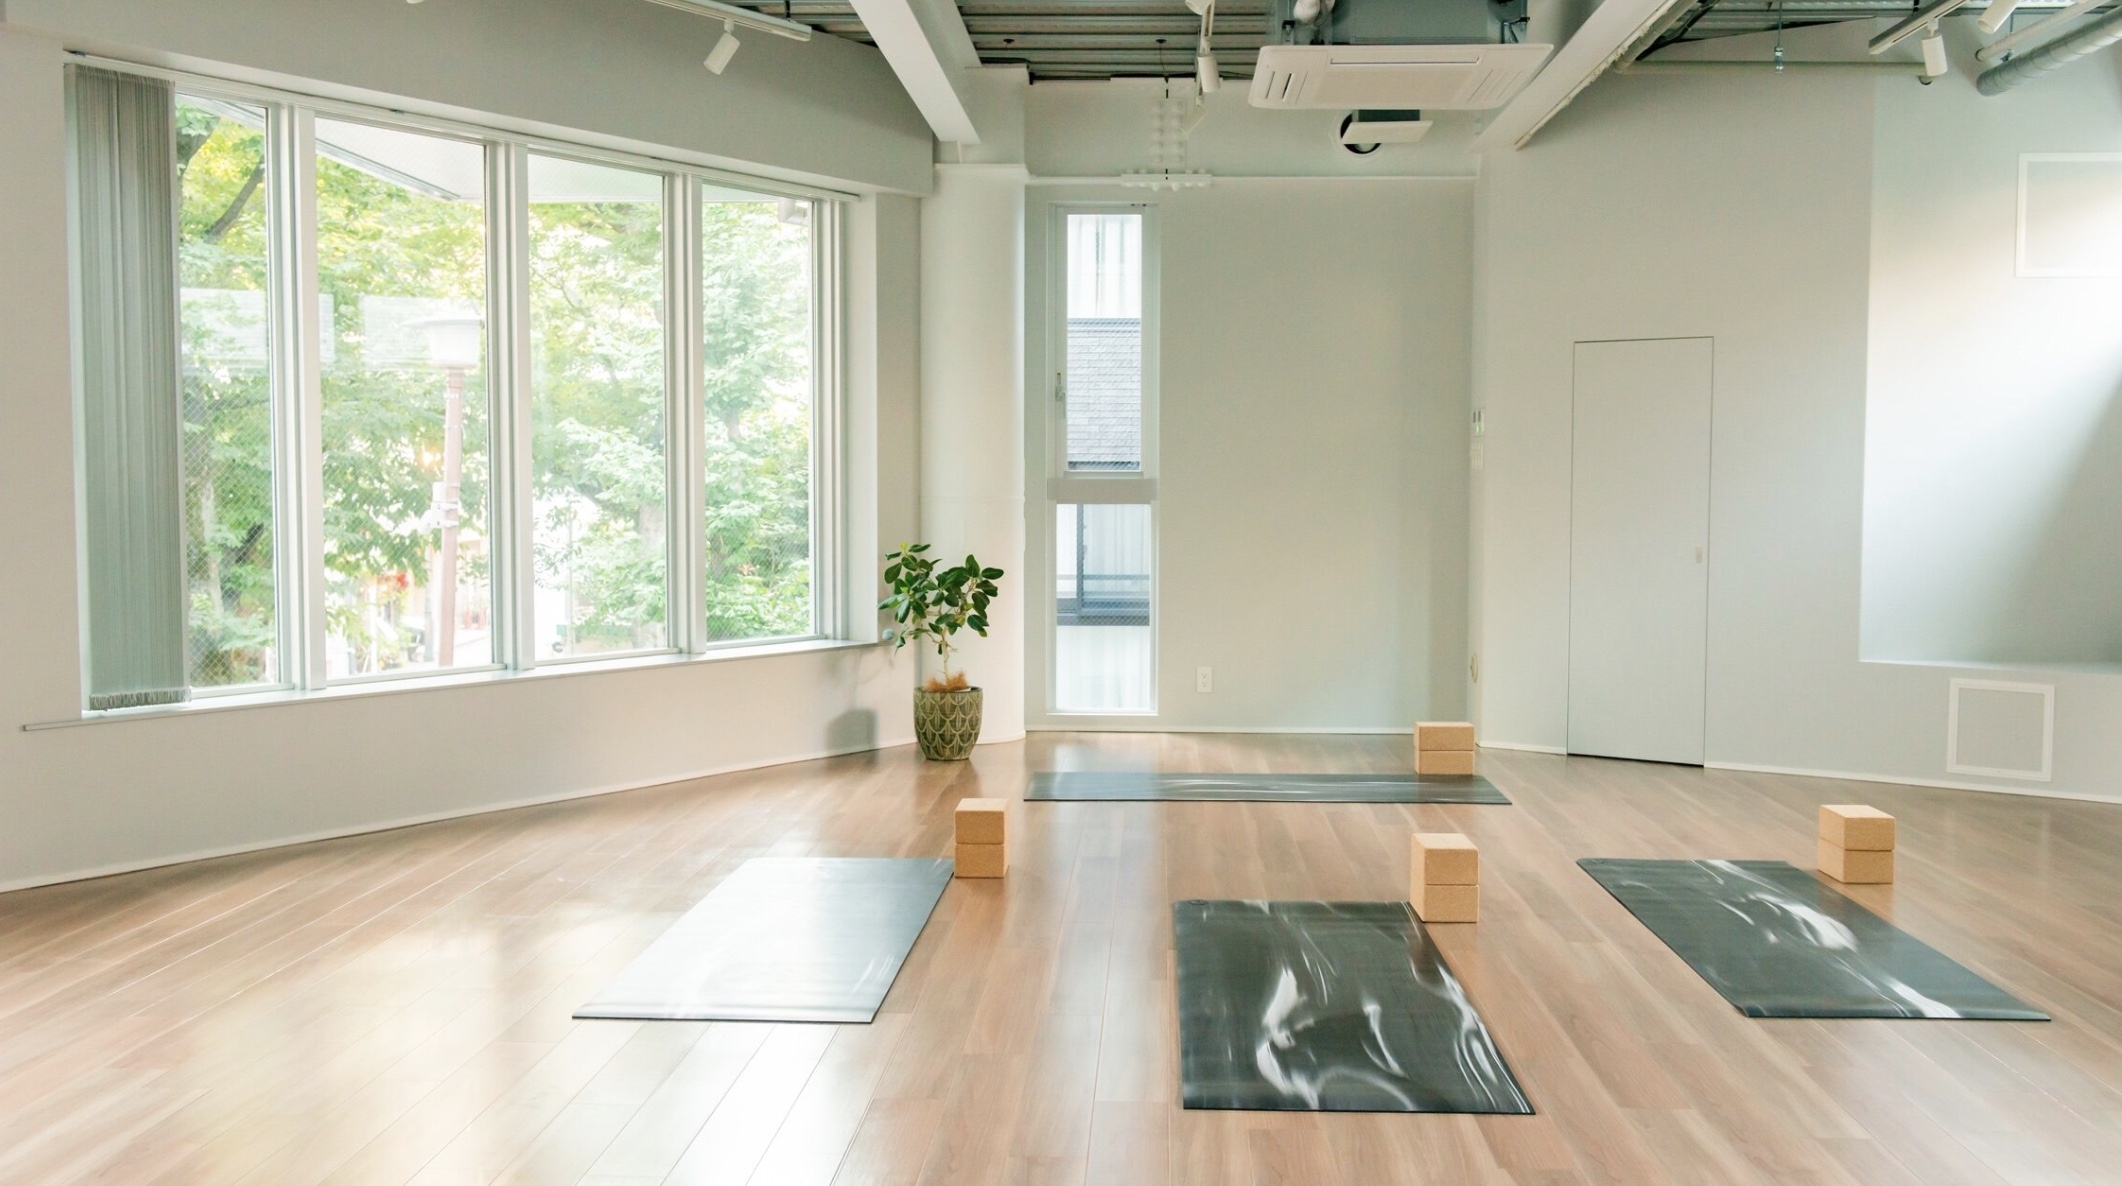 MINT MAT Yoga Studio